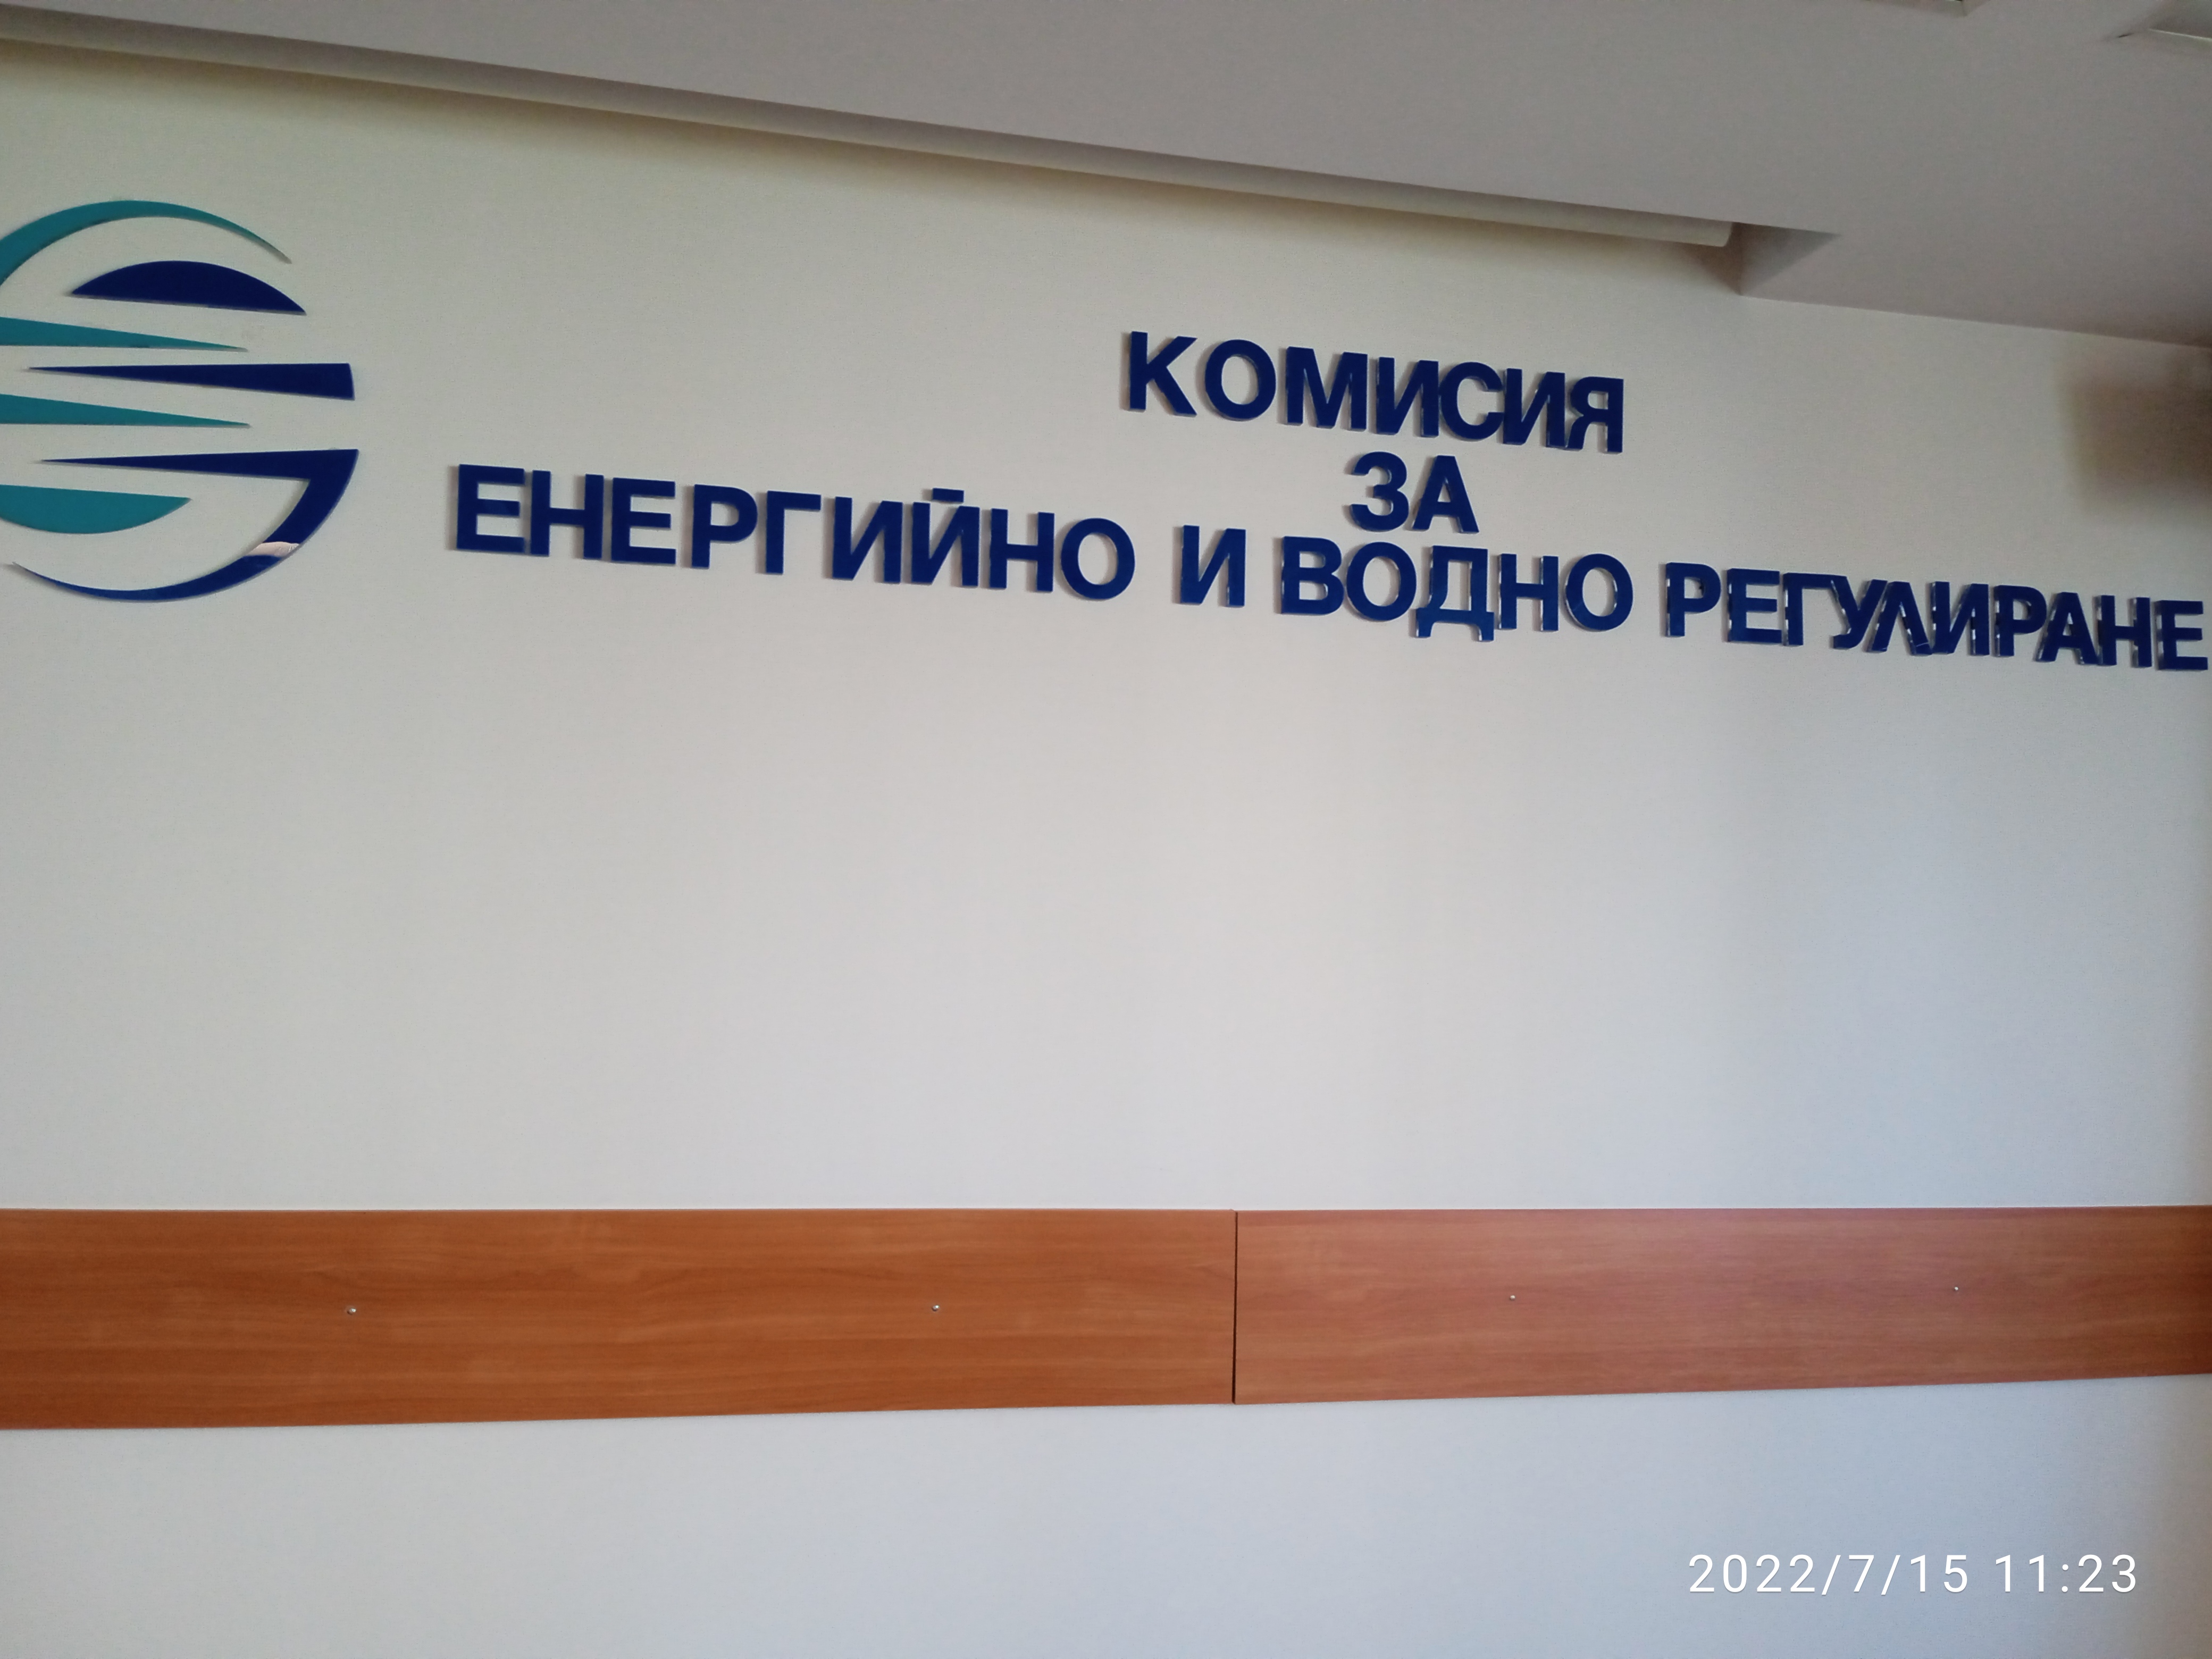 Комисията за енергийно и водно регулиране (КЕВВР) на открито заседание